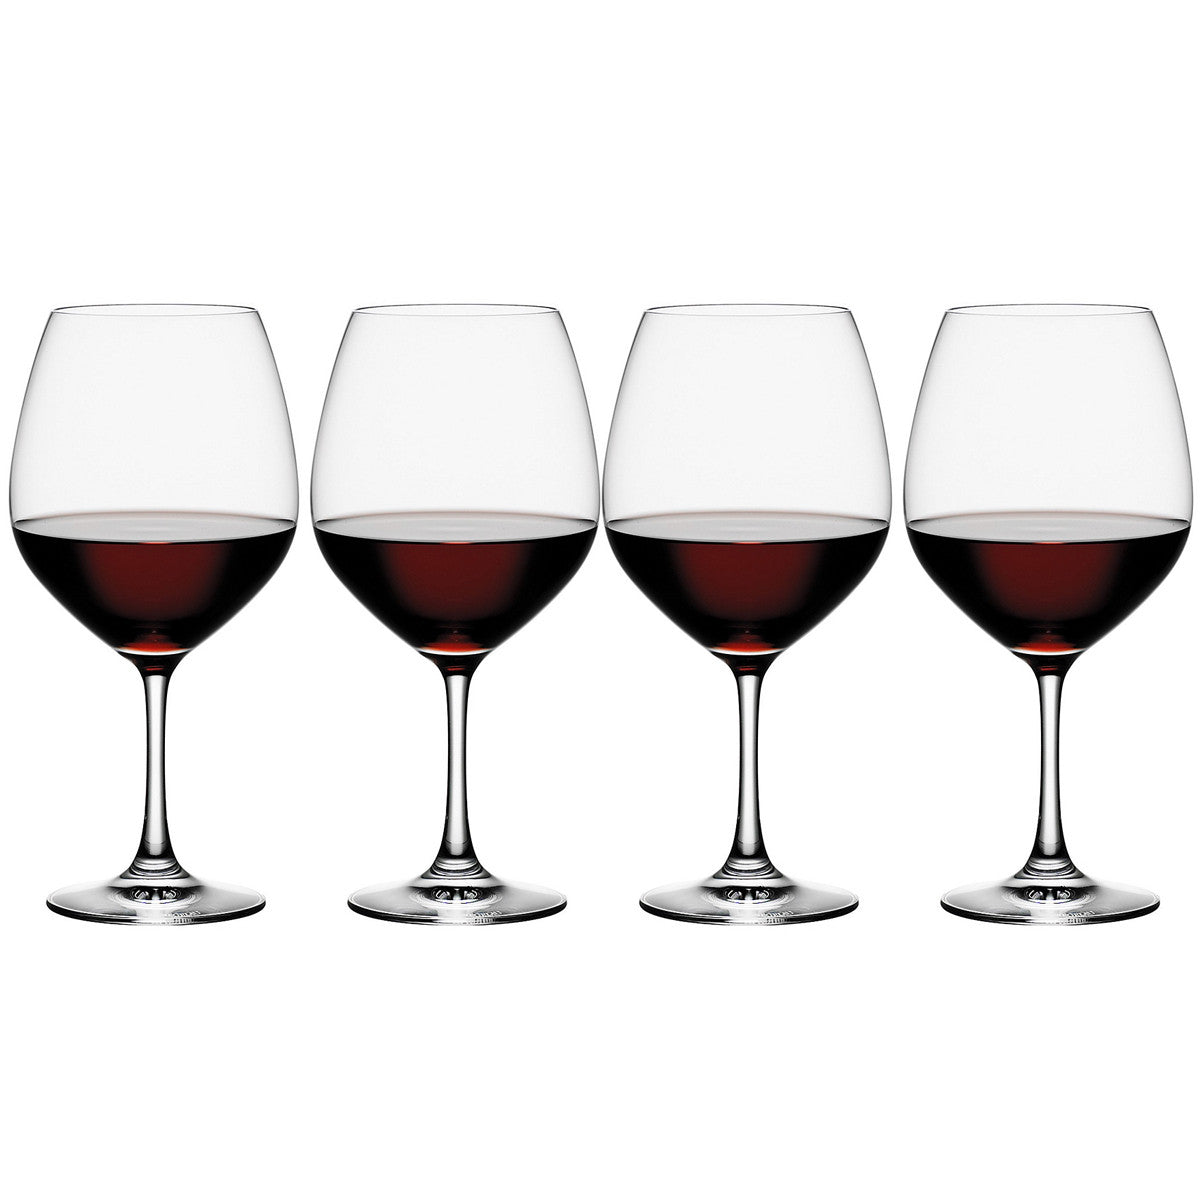 Vino Grande Burgundy Glasses / Set 4